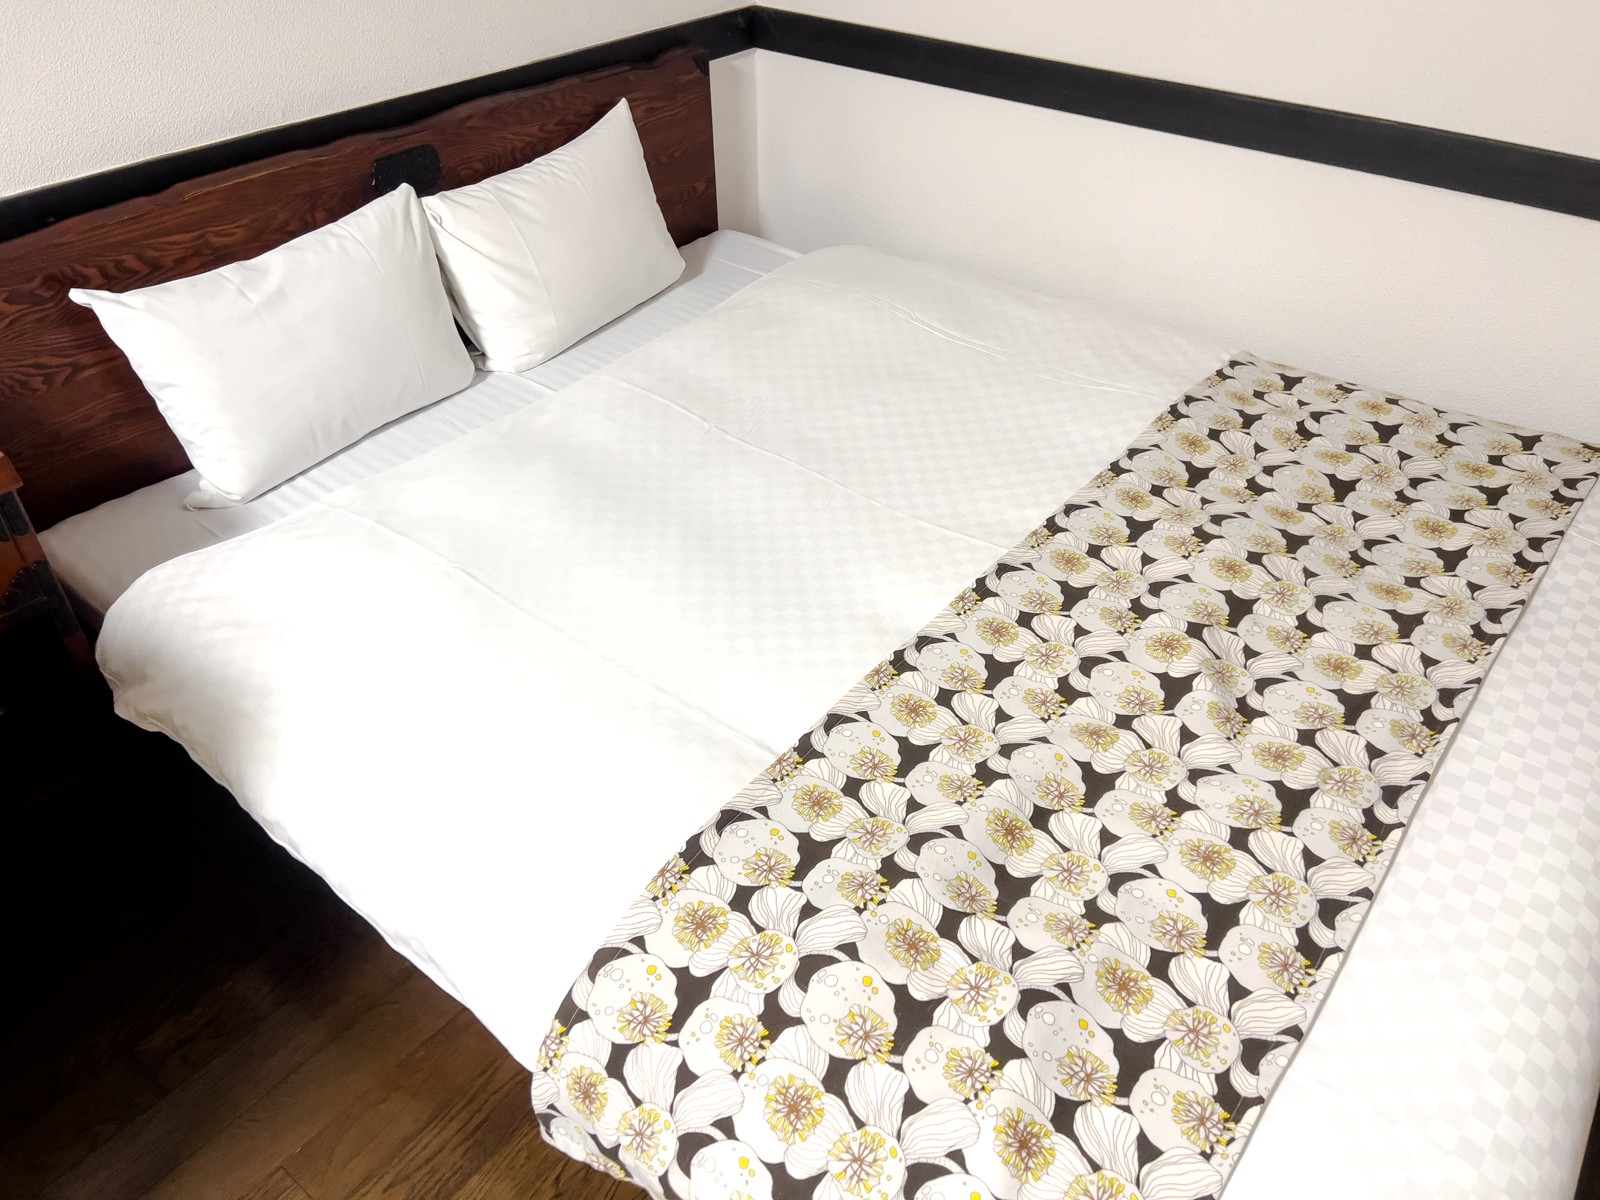 熊本 和数奇 司館 客室のベッド